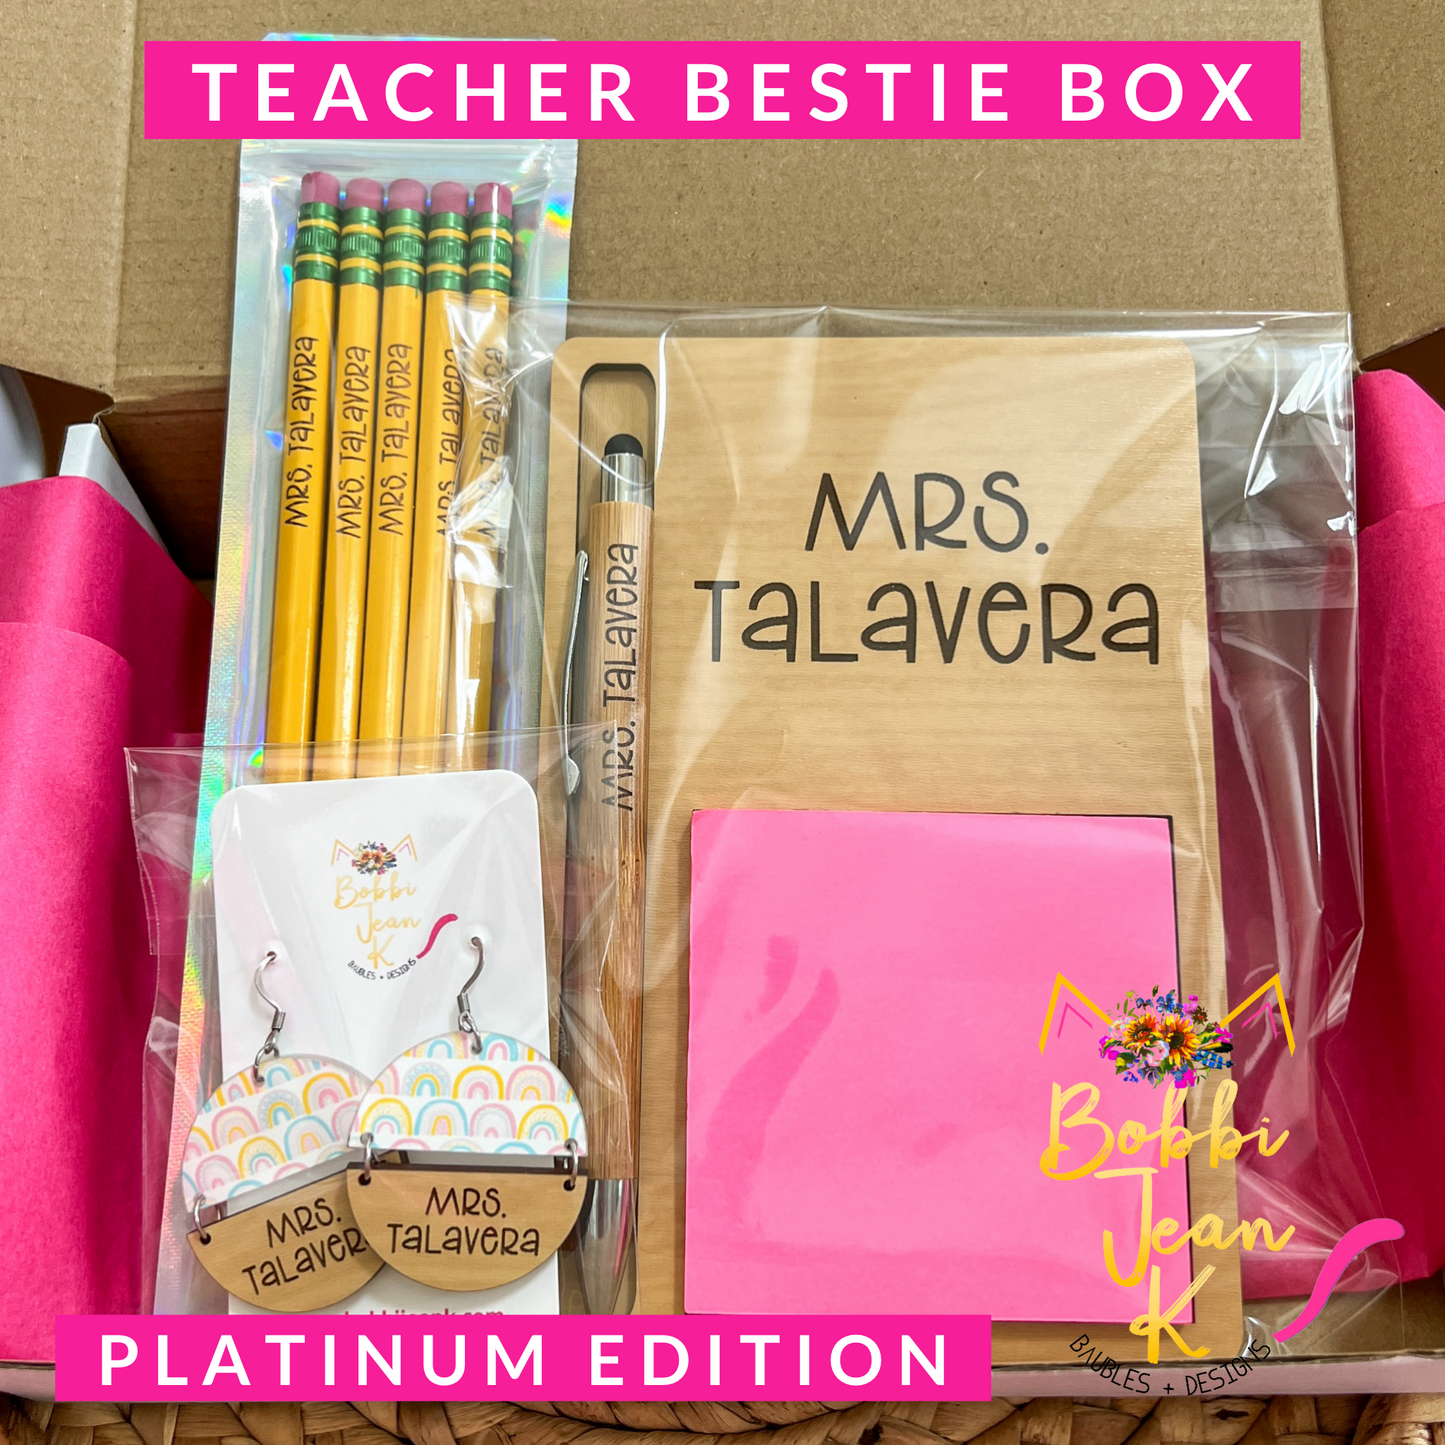 Teacher Bestie Box: PLATINUM EDITION